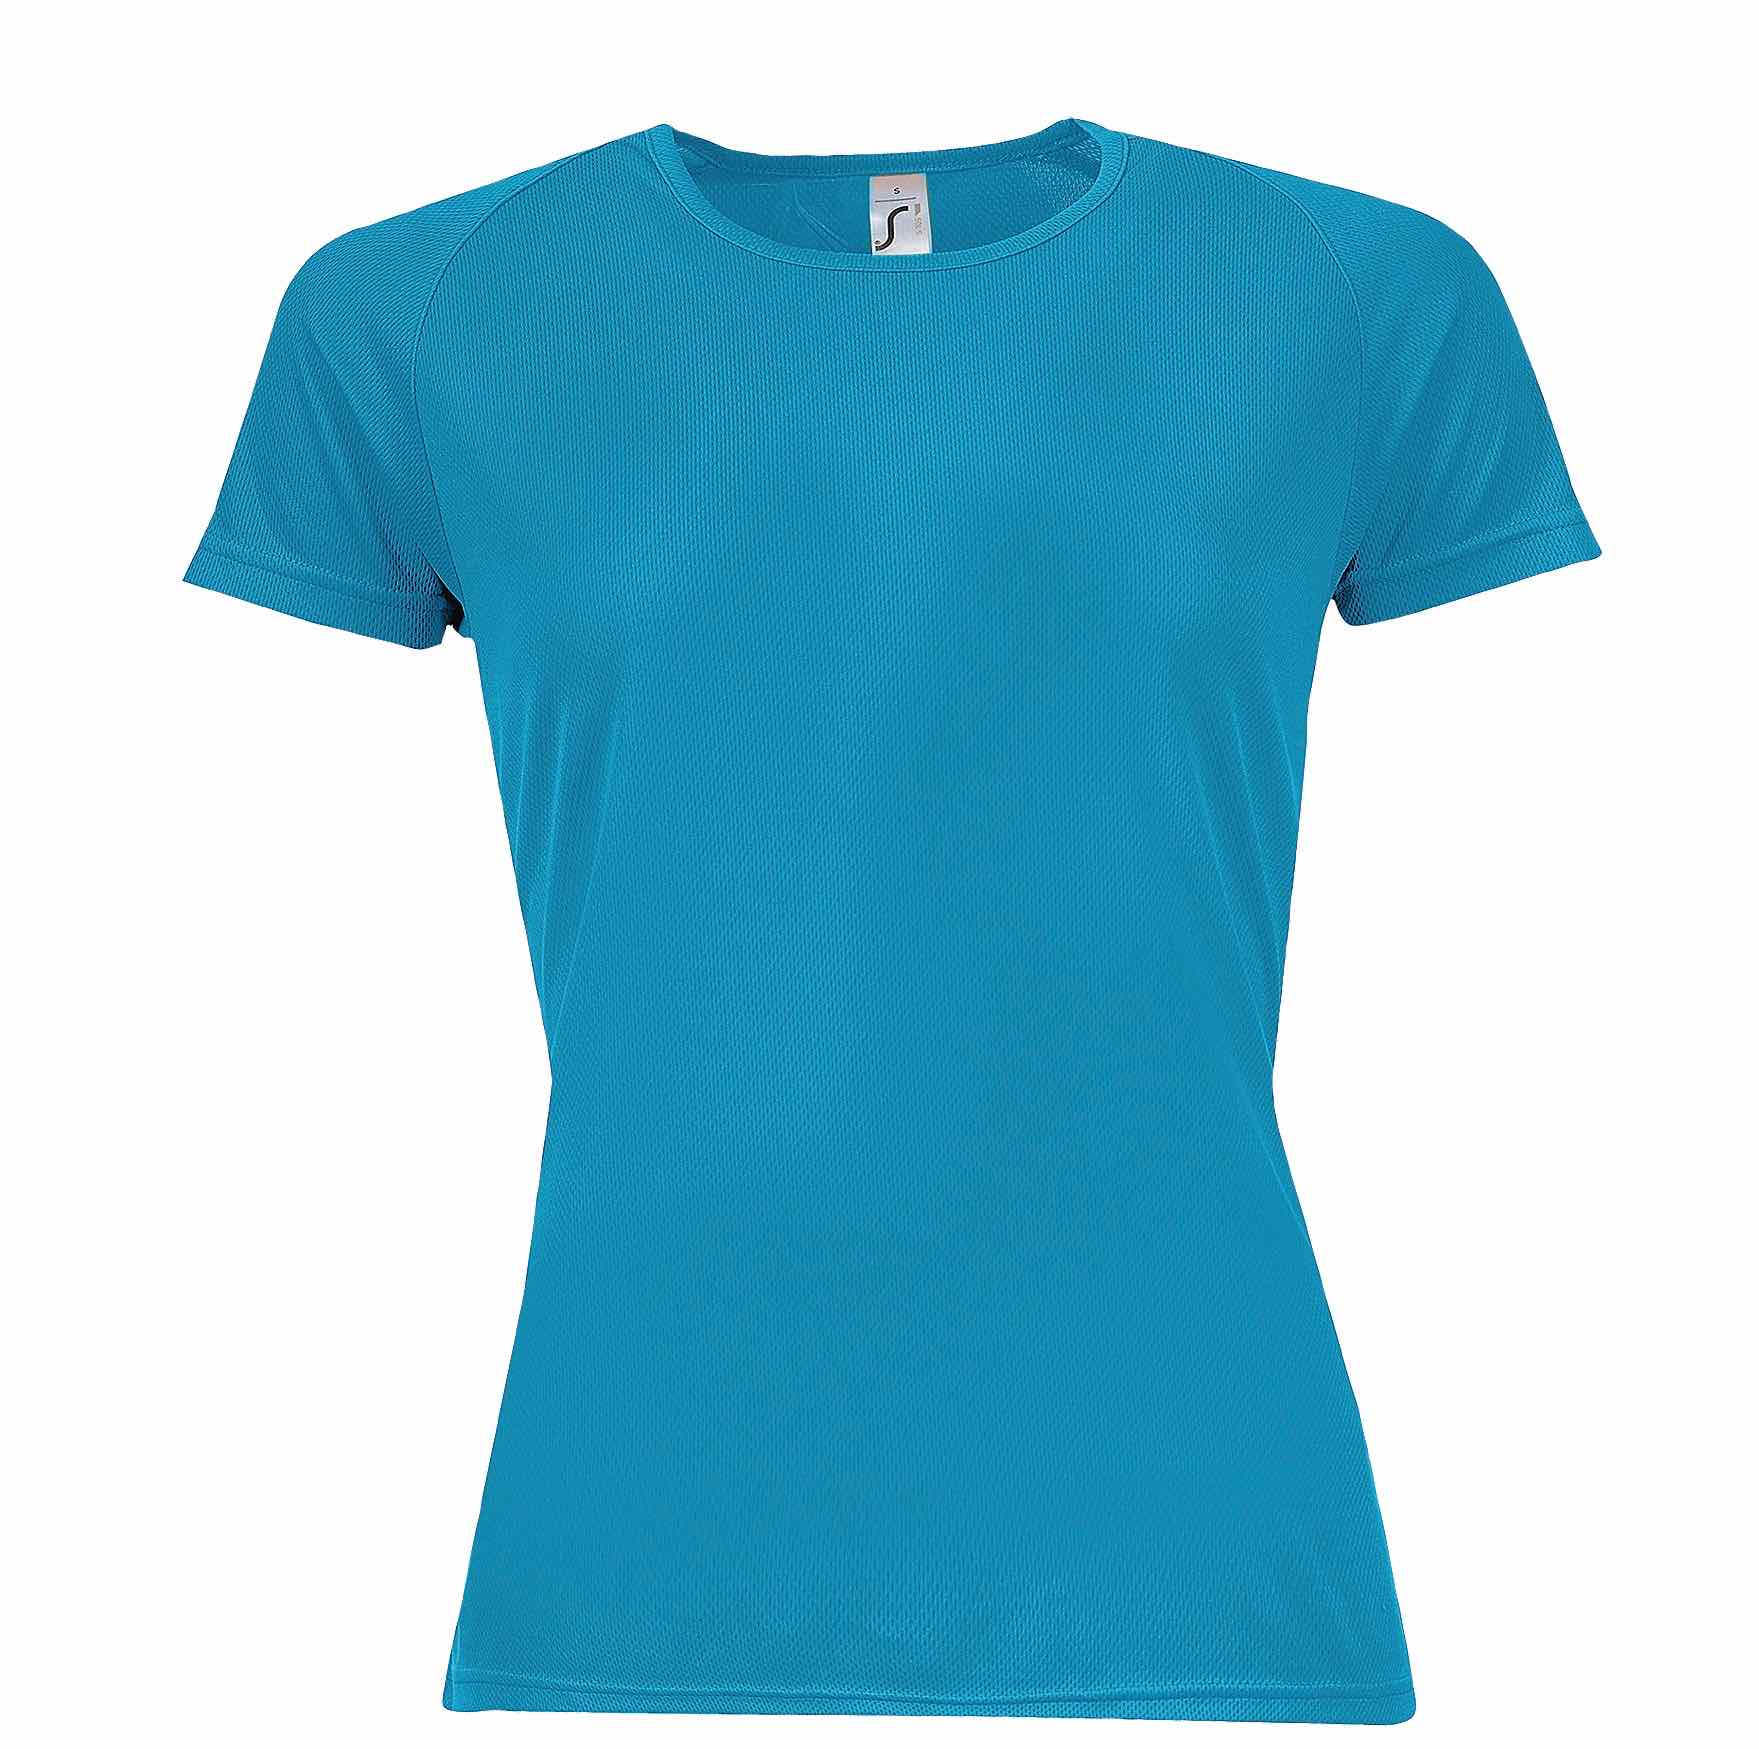 T-shirt Donna Traspirante manica corta